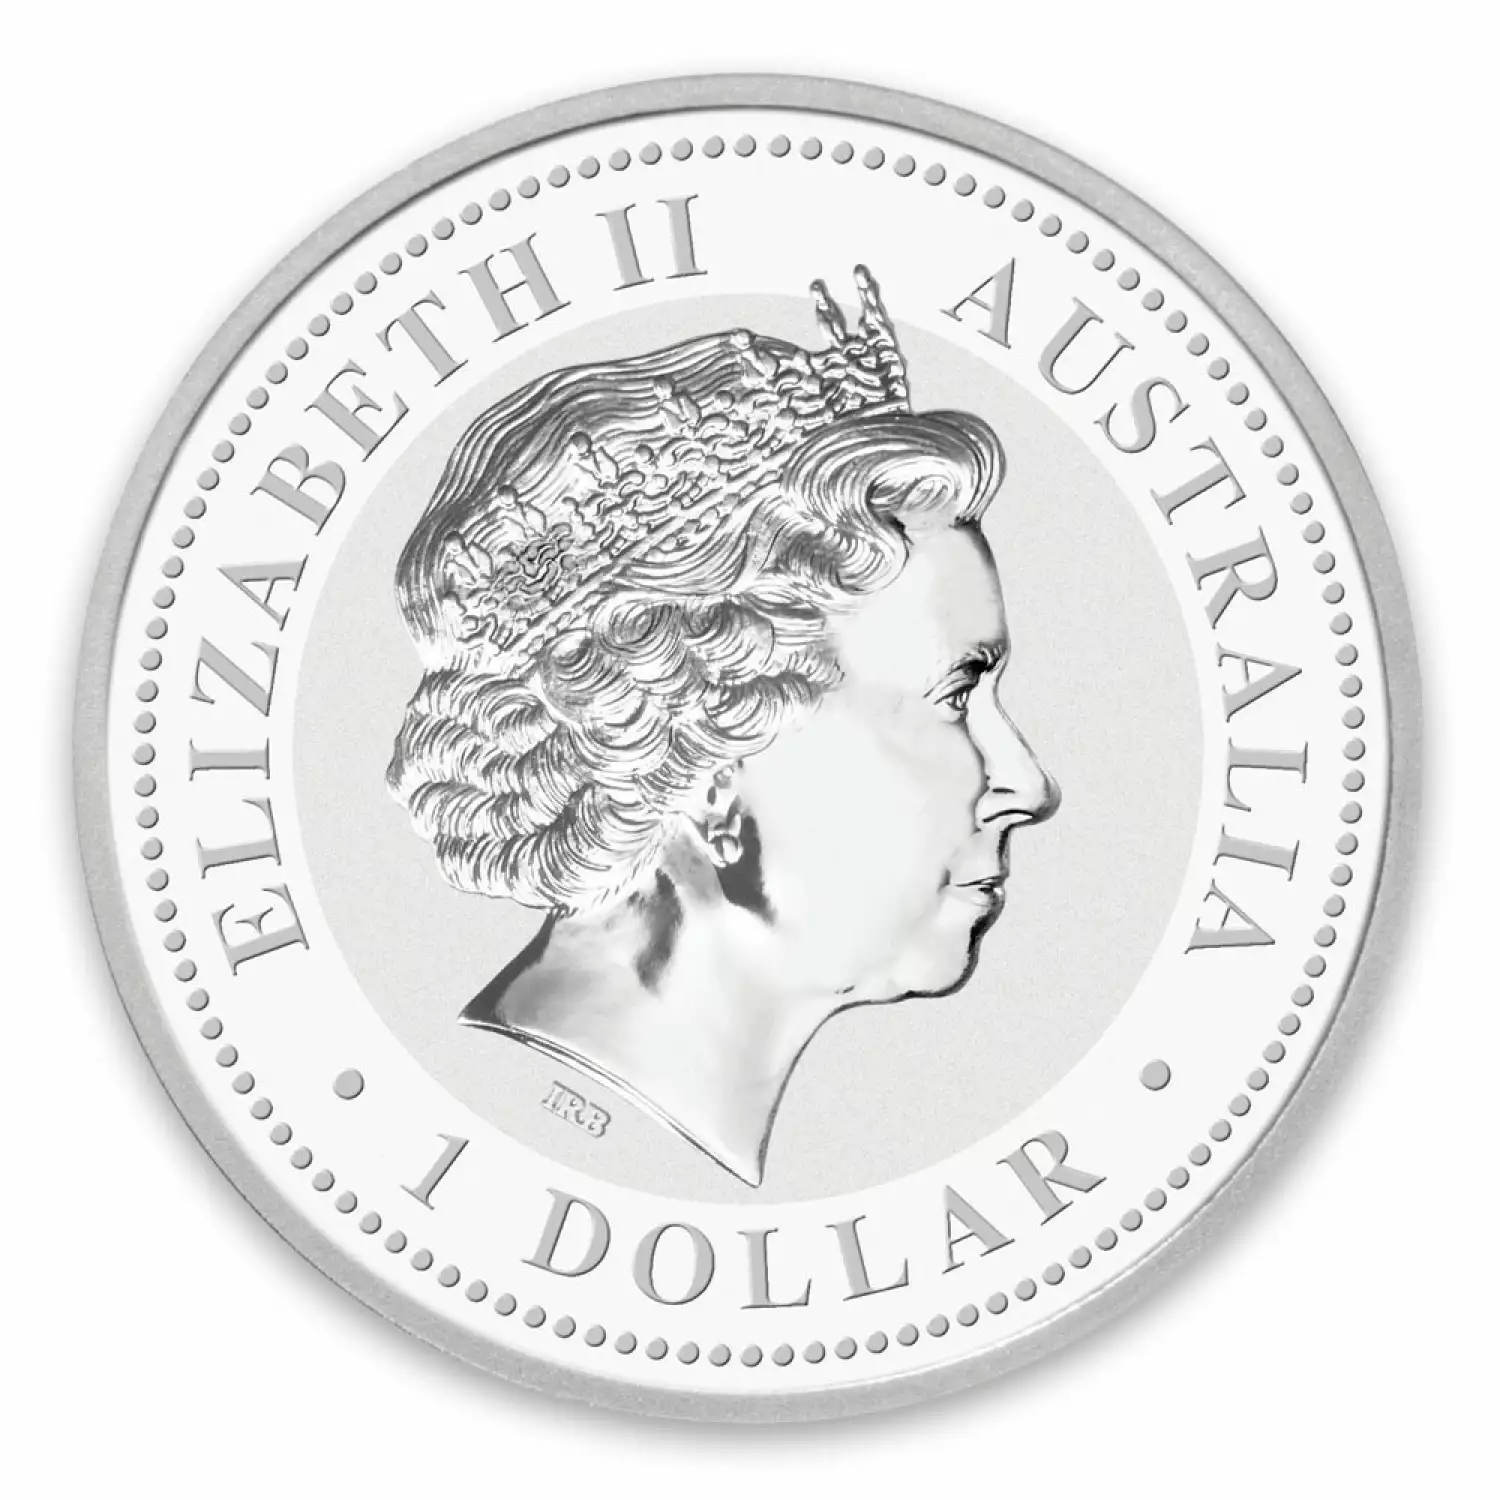 2009 1oz Australian Perth Mint Silver Kookaburra (2)